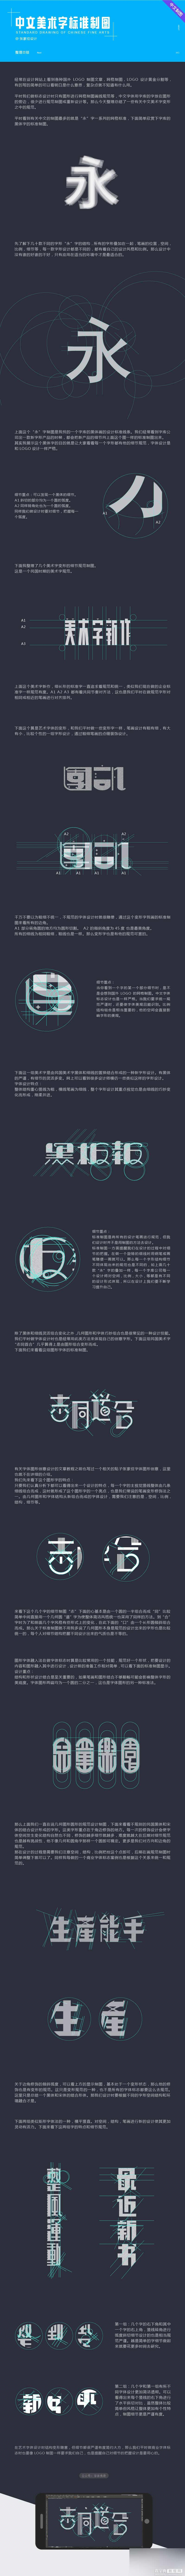 可爱的中文美术字体标准制图技巧教程1